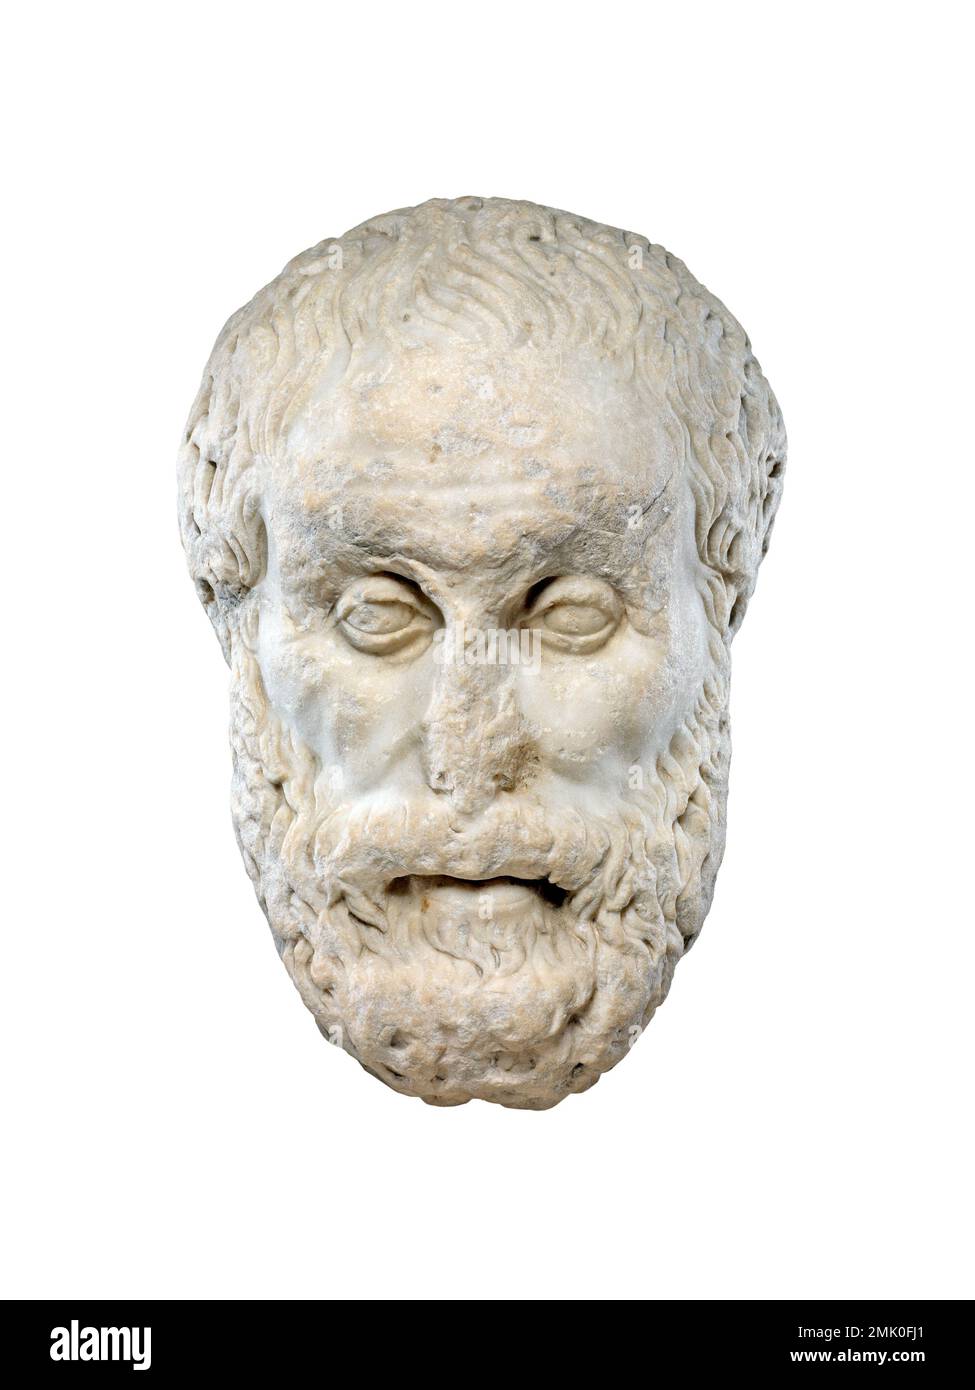 Tête philosophe grecque en marbre antique isolée sur fond blanc, vue de face Banque D'Images